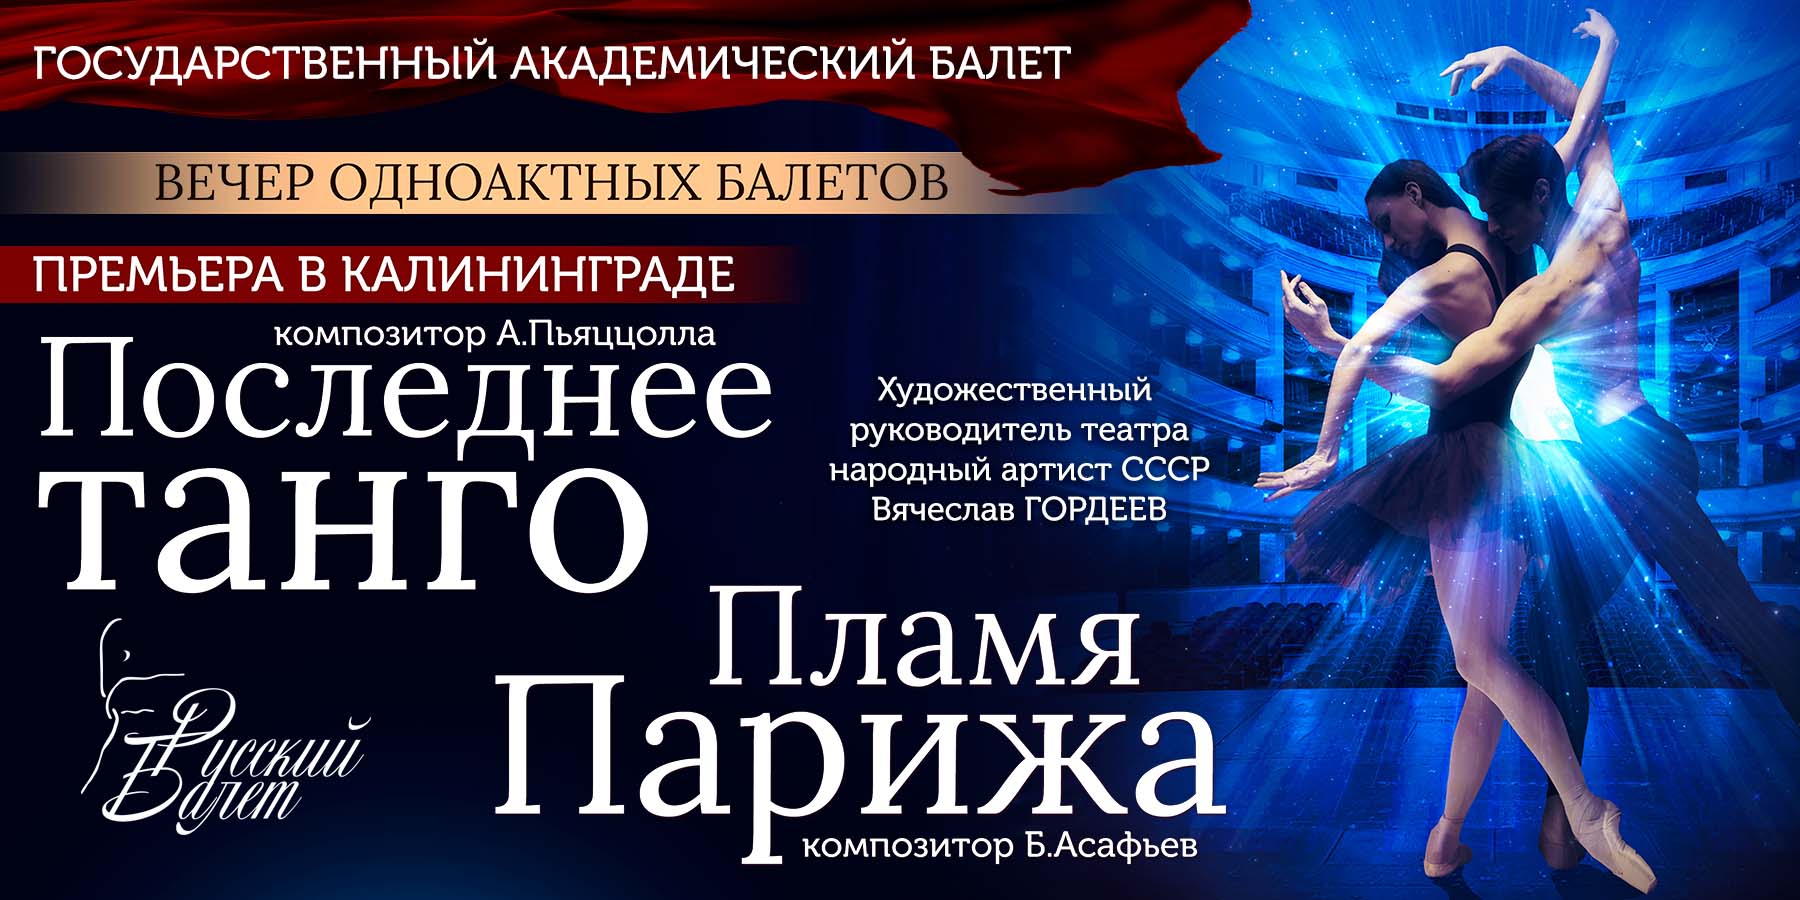 Государственный академический театр балета «Вечер одноактных балетов»